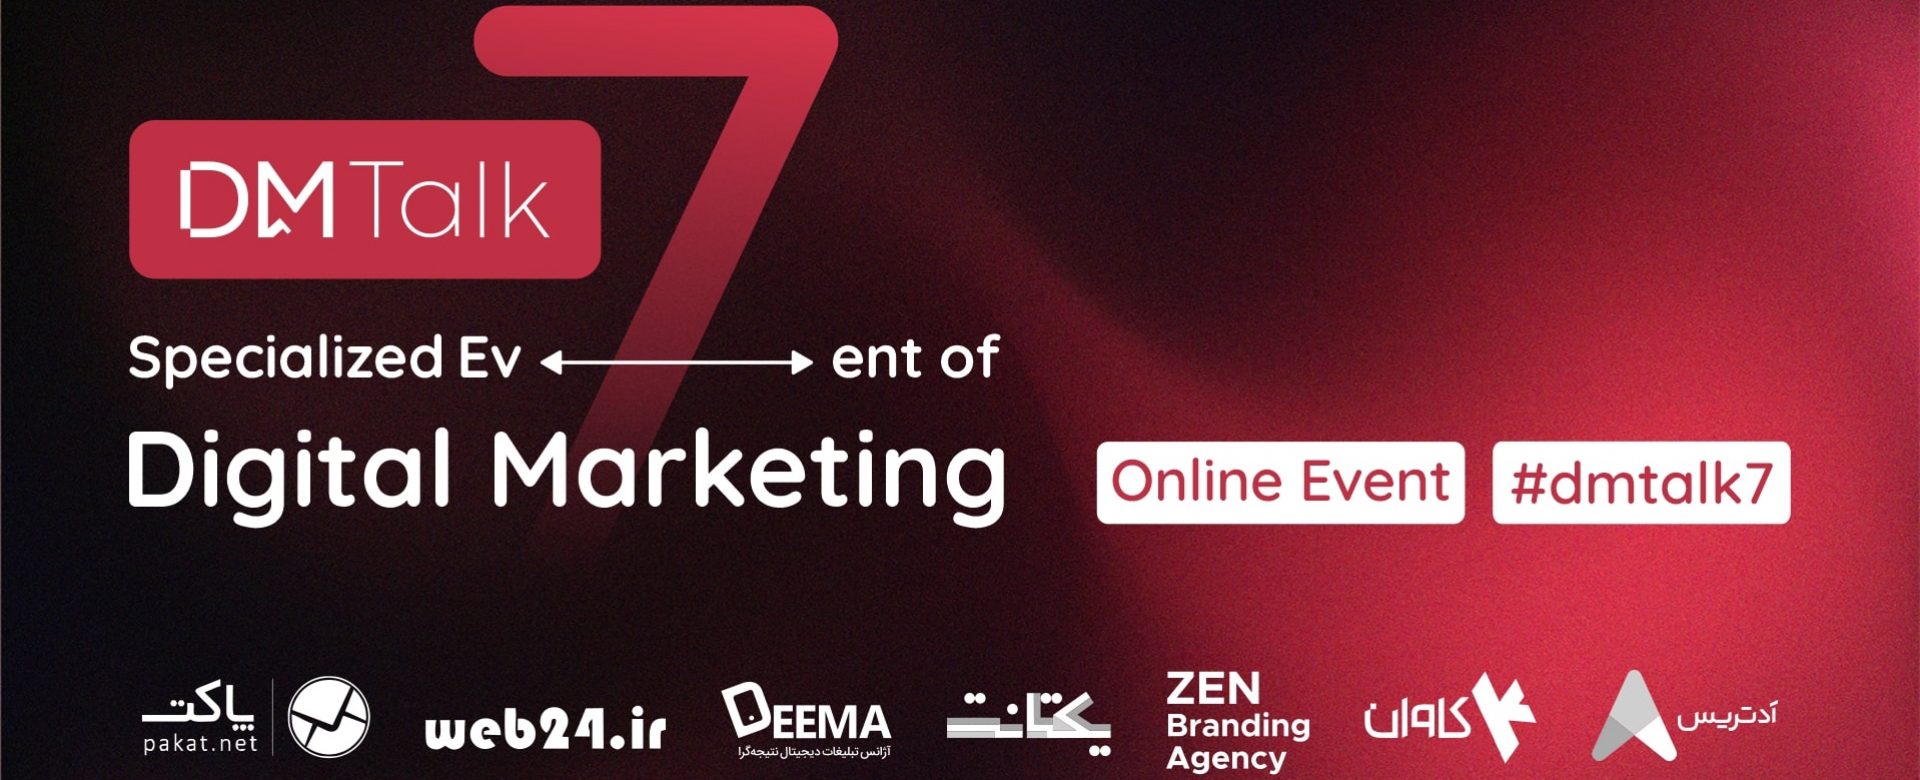 طراحی دی ام تاک 7 DM Talk 7 آژانس بردسازی ذن ZEN Branding agency (9)